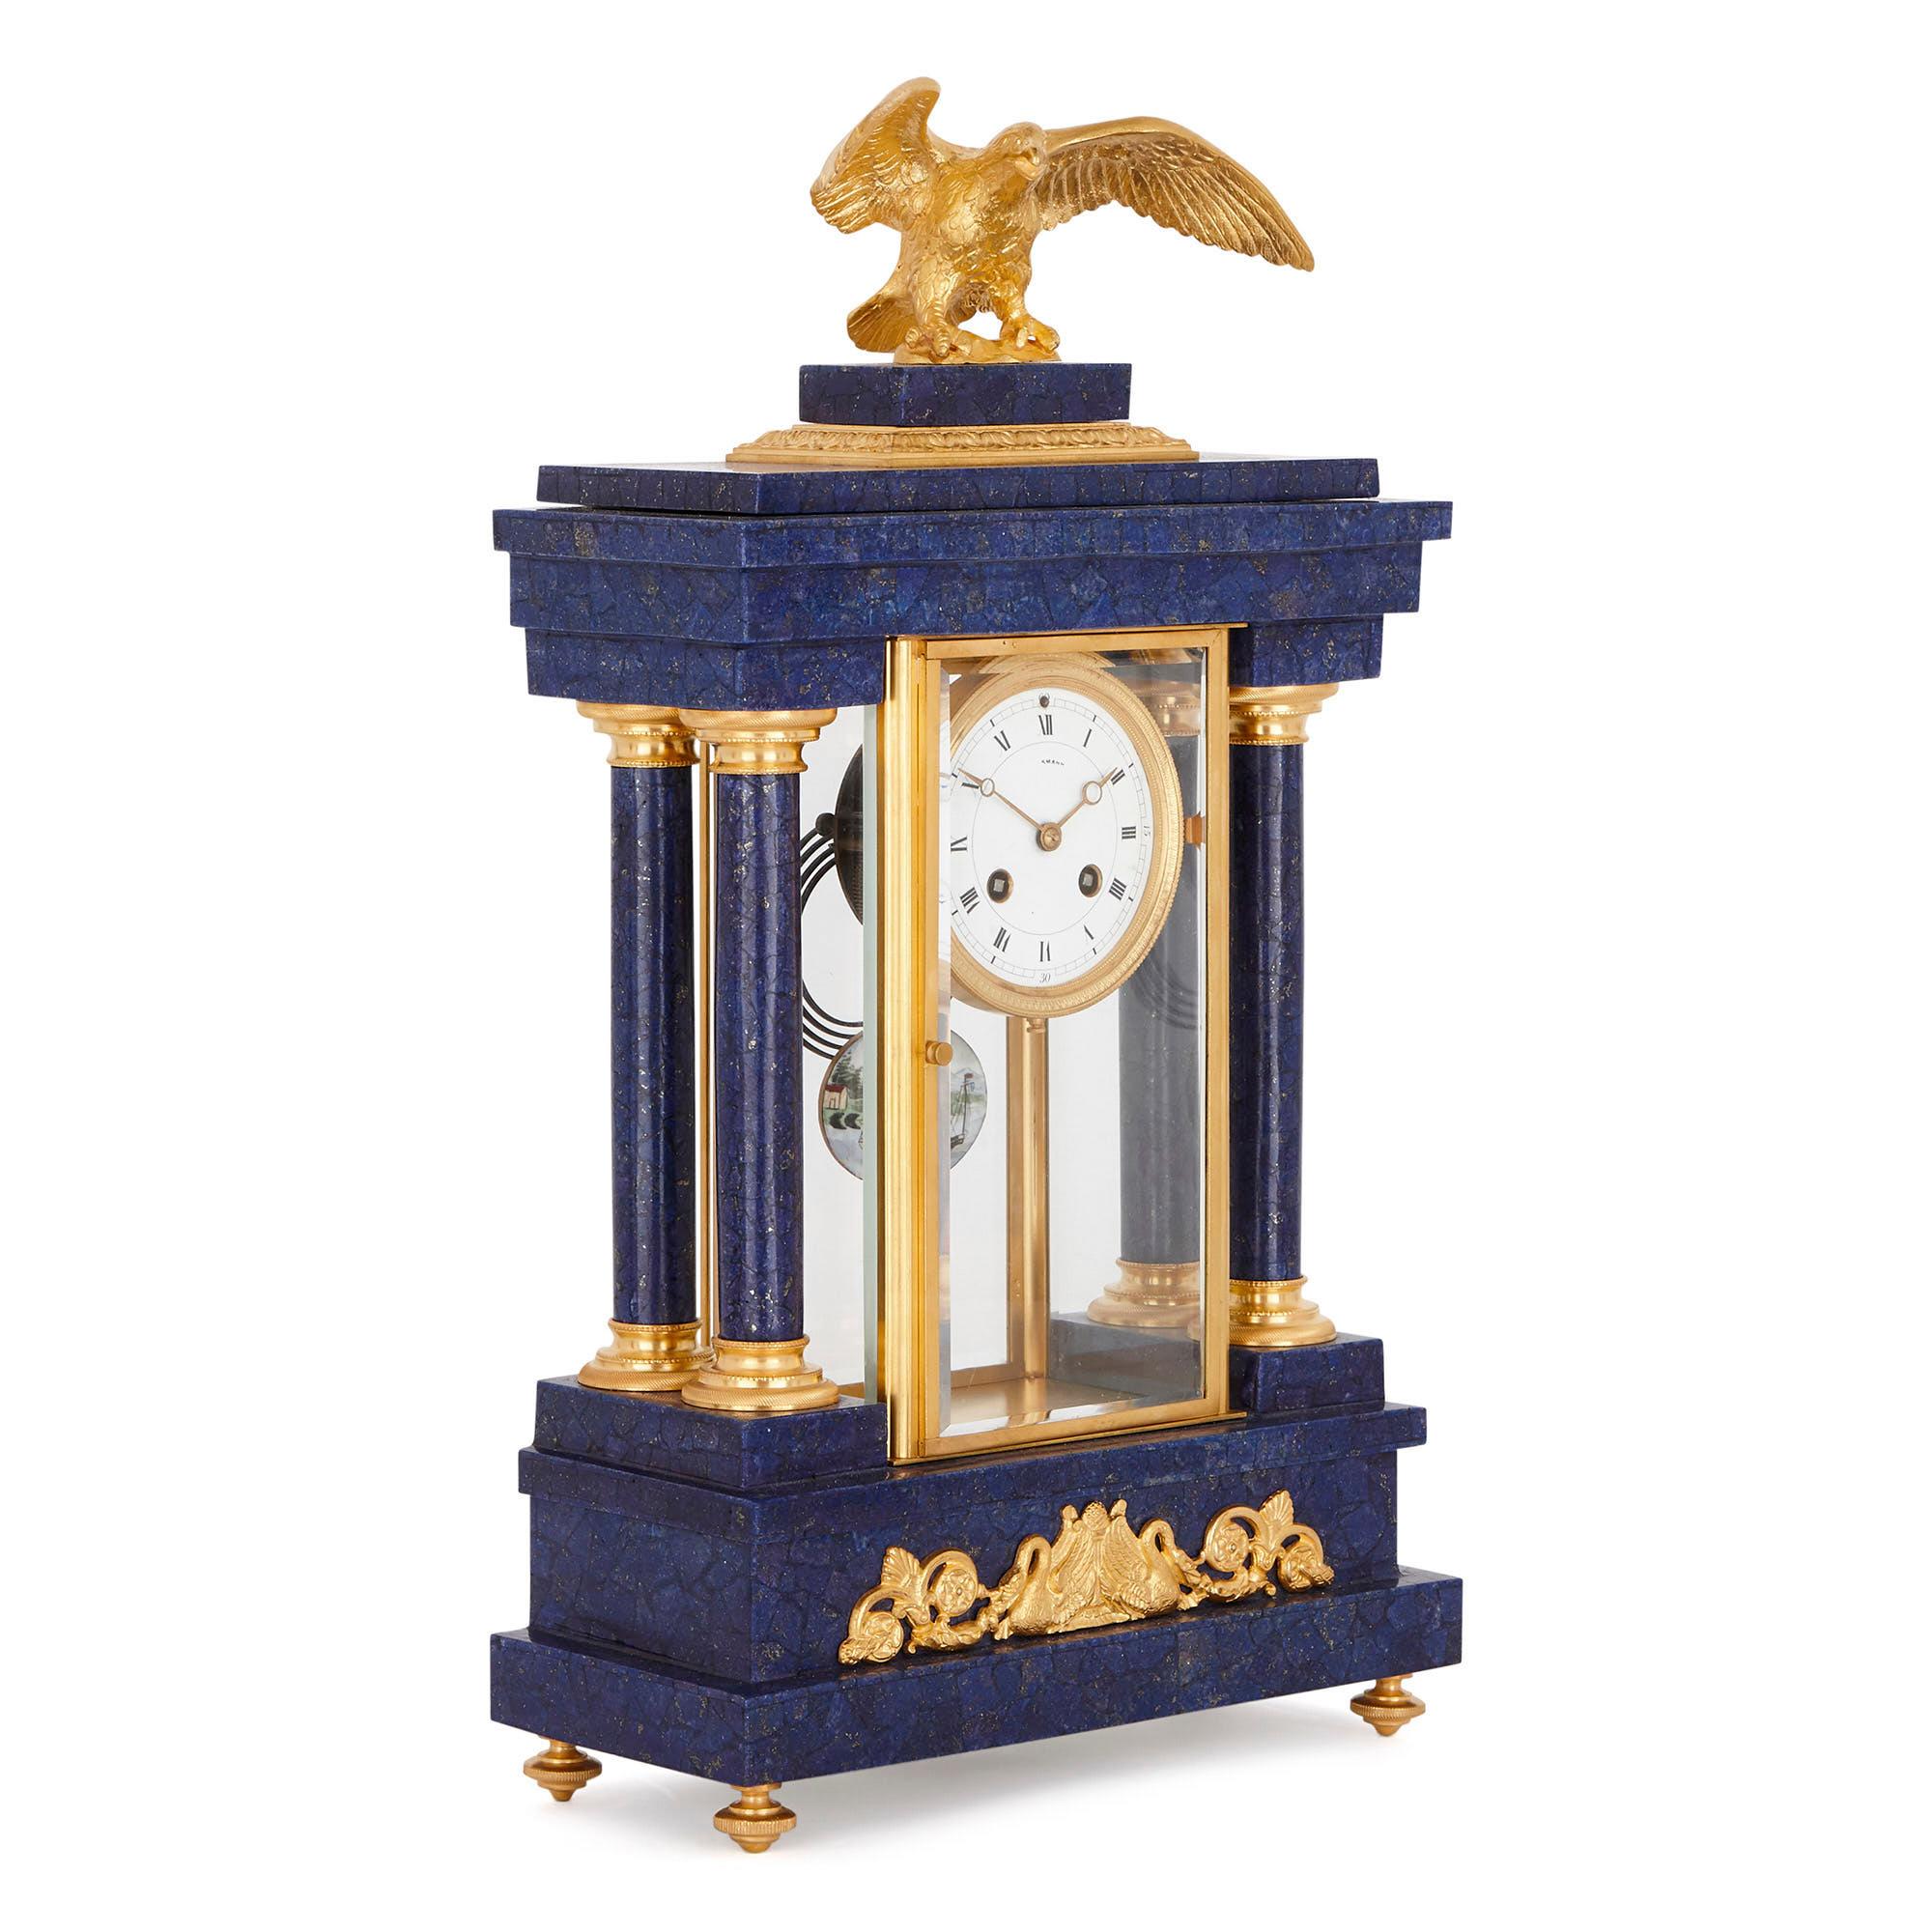 Diese schöne Uhr aus dem frühen 20. Jahrhundert mit späterem Lapisfurnier ist eine atemberaubende Ergänzung im neoklassizistischen Stil für einen Kaminsims und dank ihrer leuchtenden blauen und goldenen Farbgebung ein kühnes Statement für die